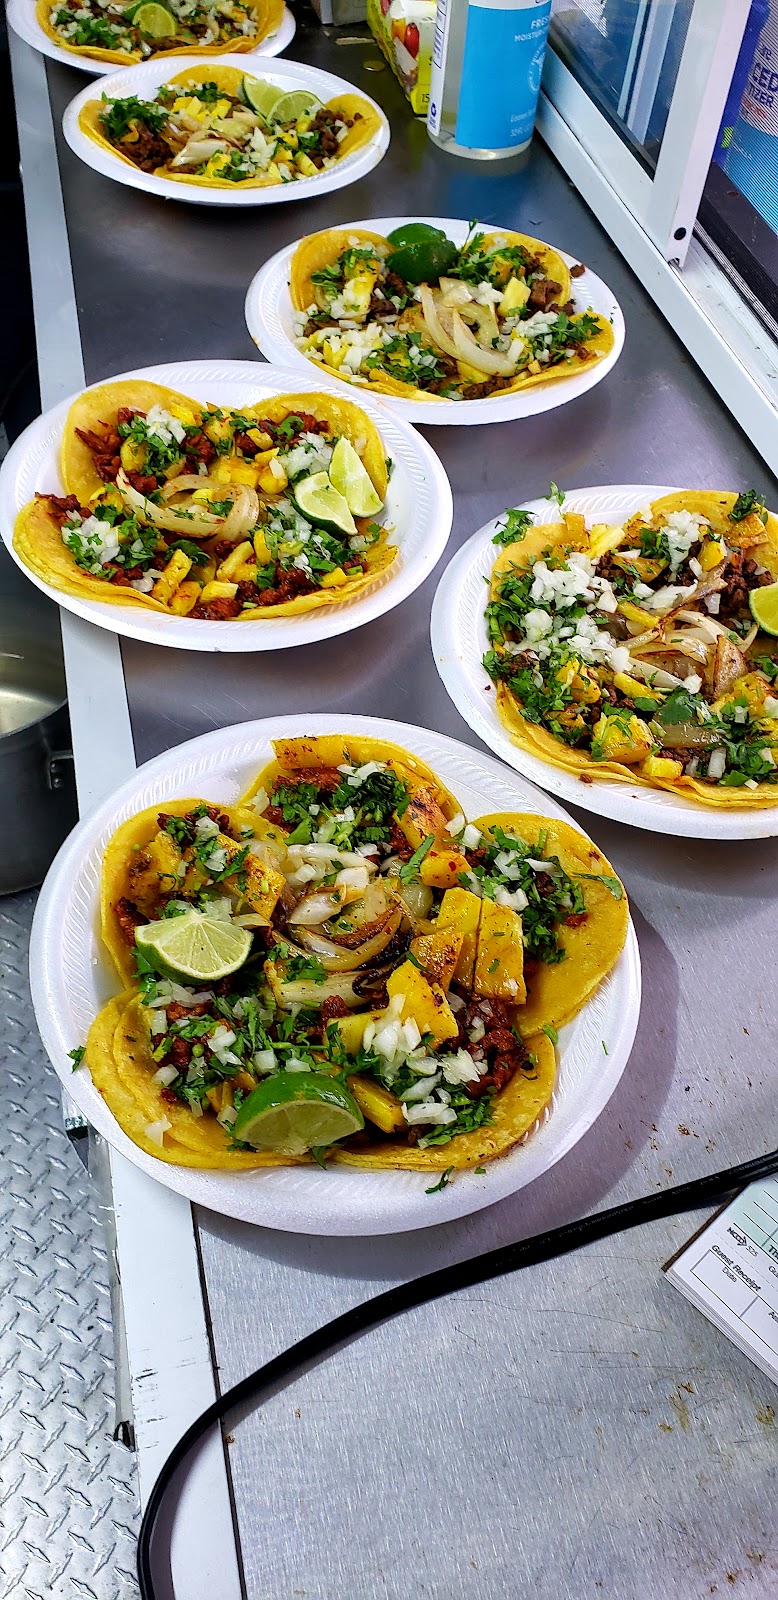 Tacos El Brujo (Food Truck) | restaurant | 6223 Bellaire Blvd, Houston, TX 77081, USA